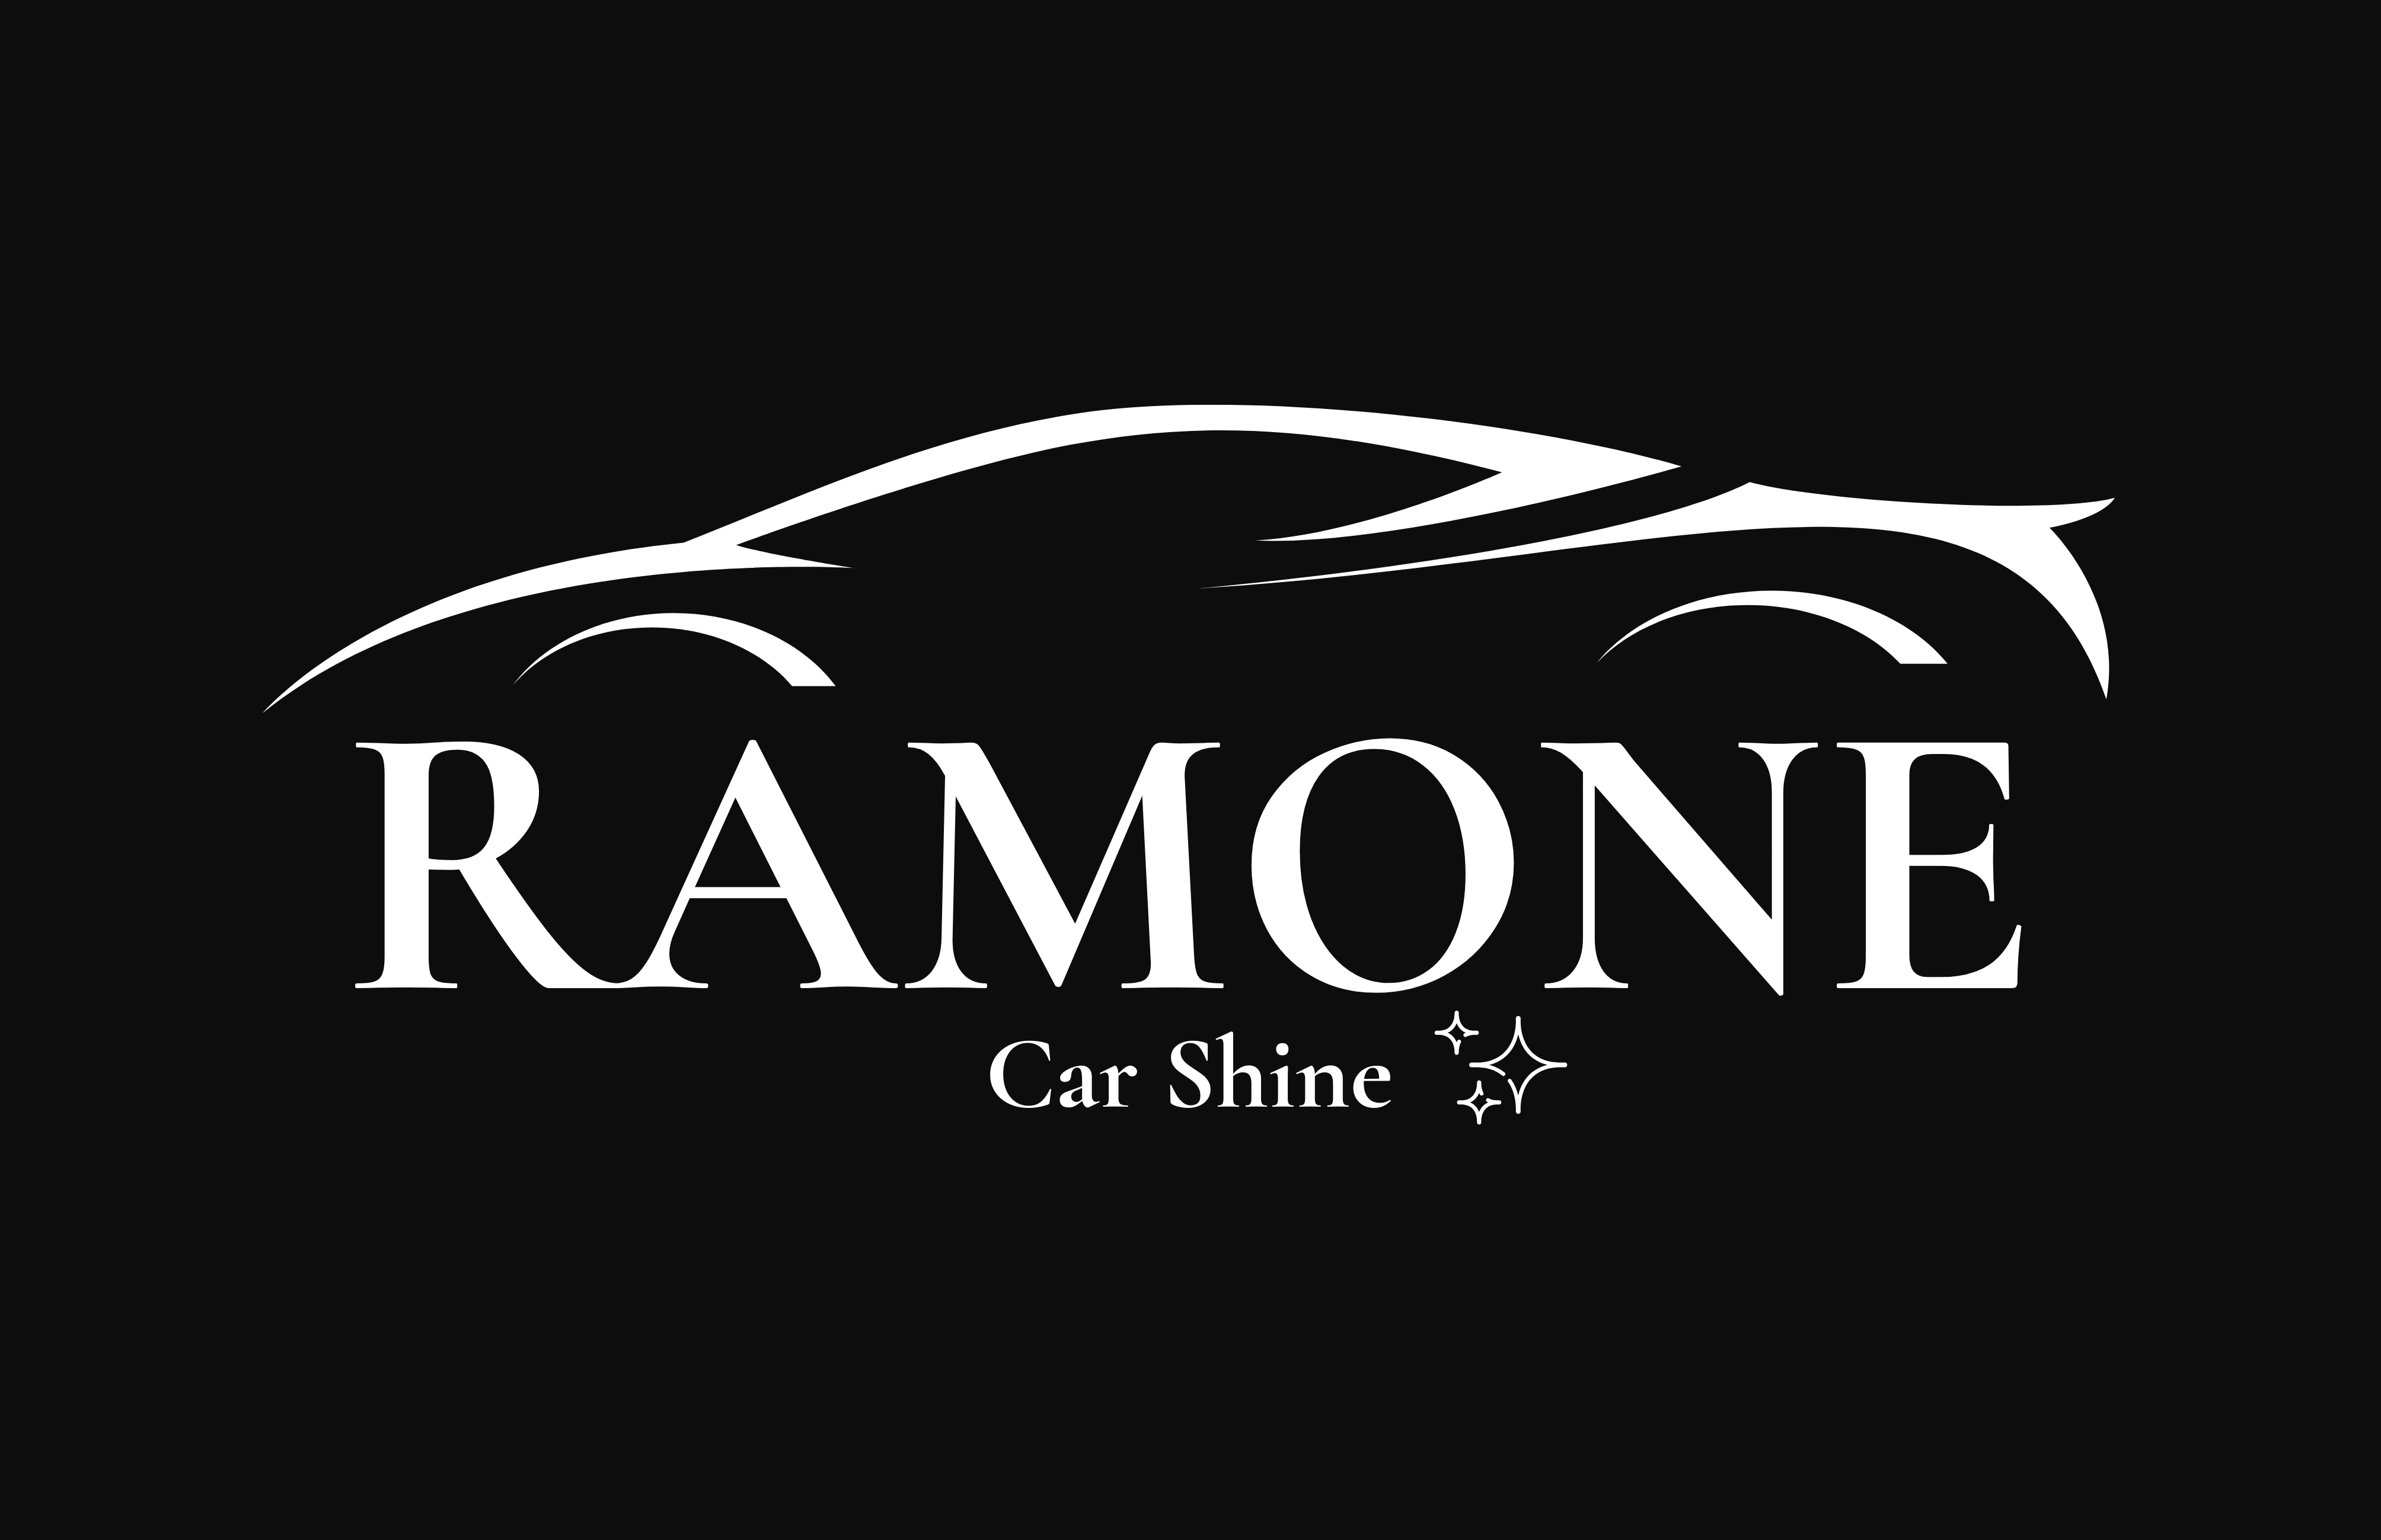 Ramone Car Shine